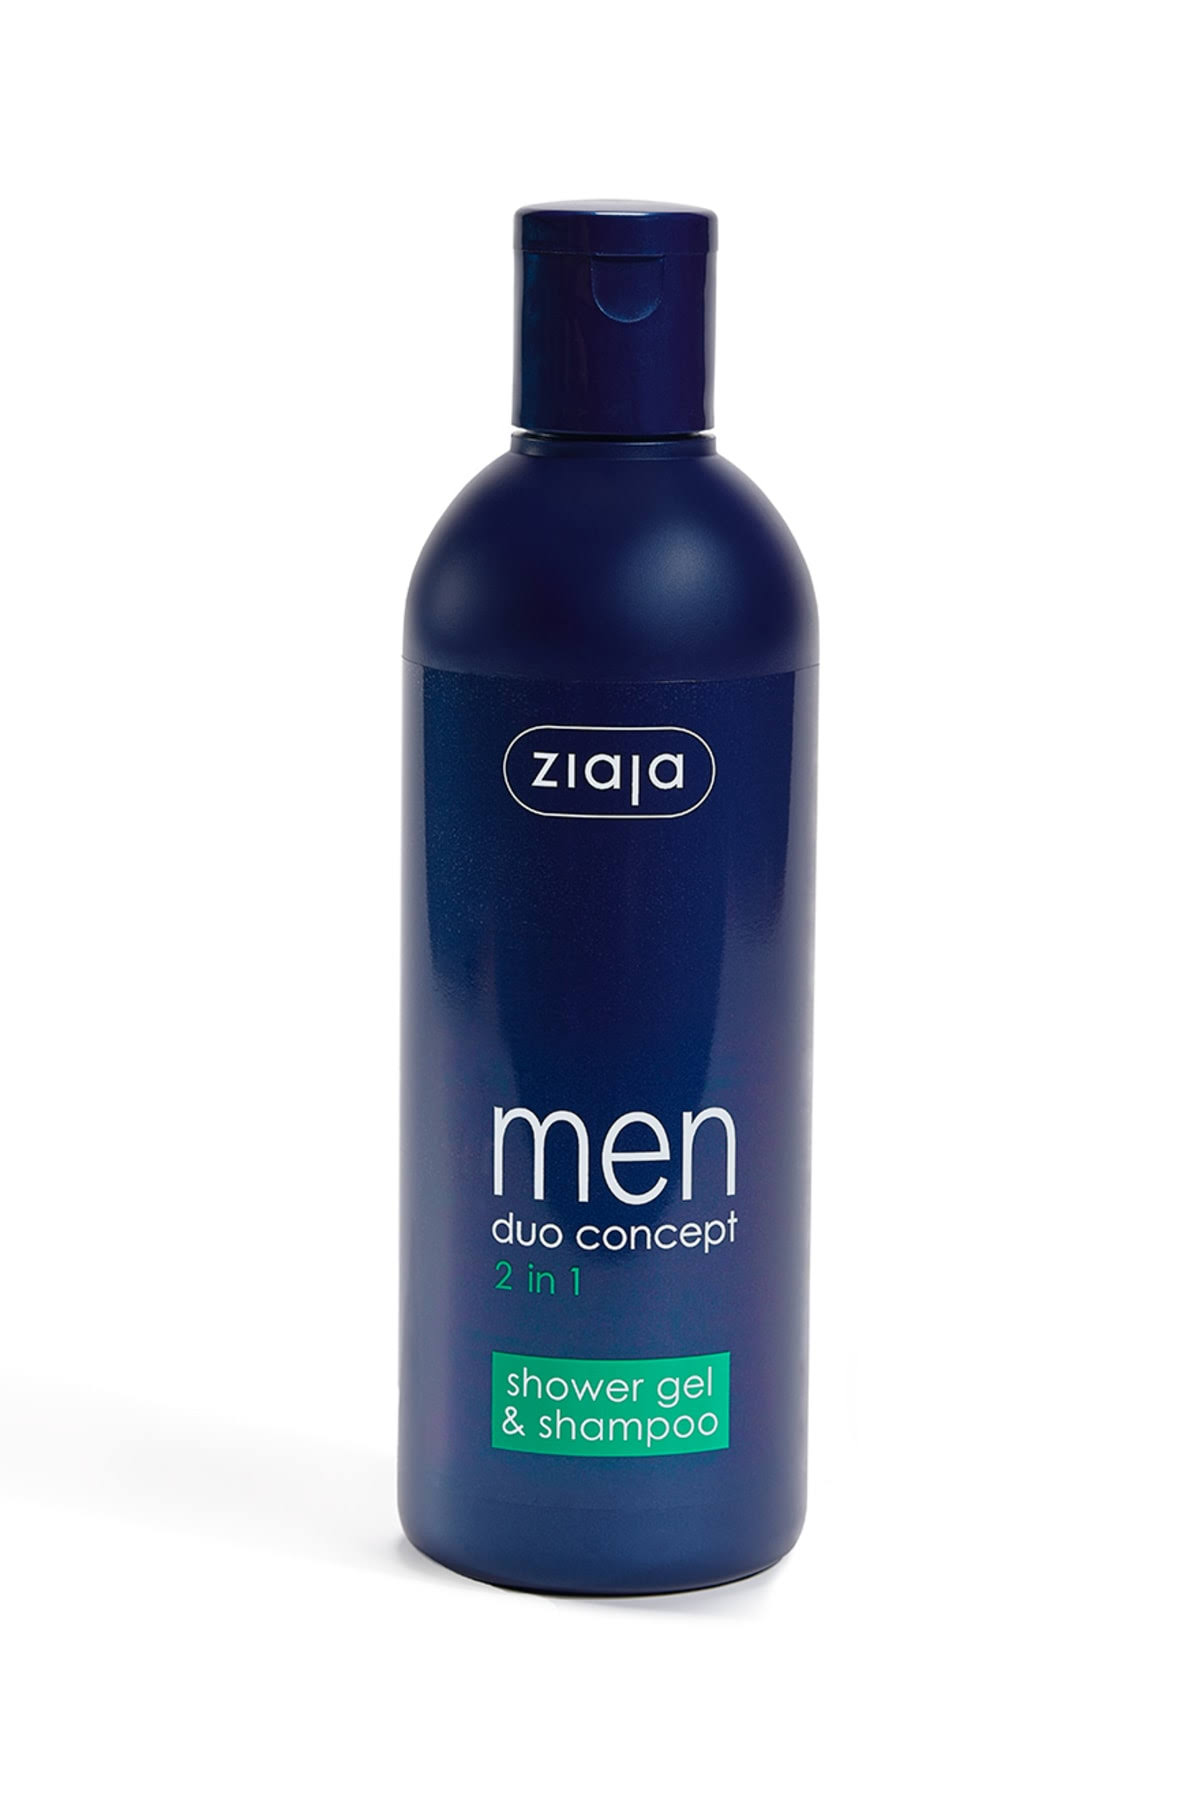 Ziaja Men 2 in 1 Shower Gel & Shampoo 300ml